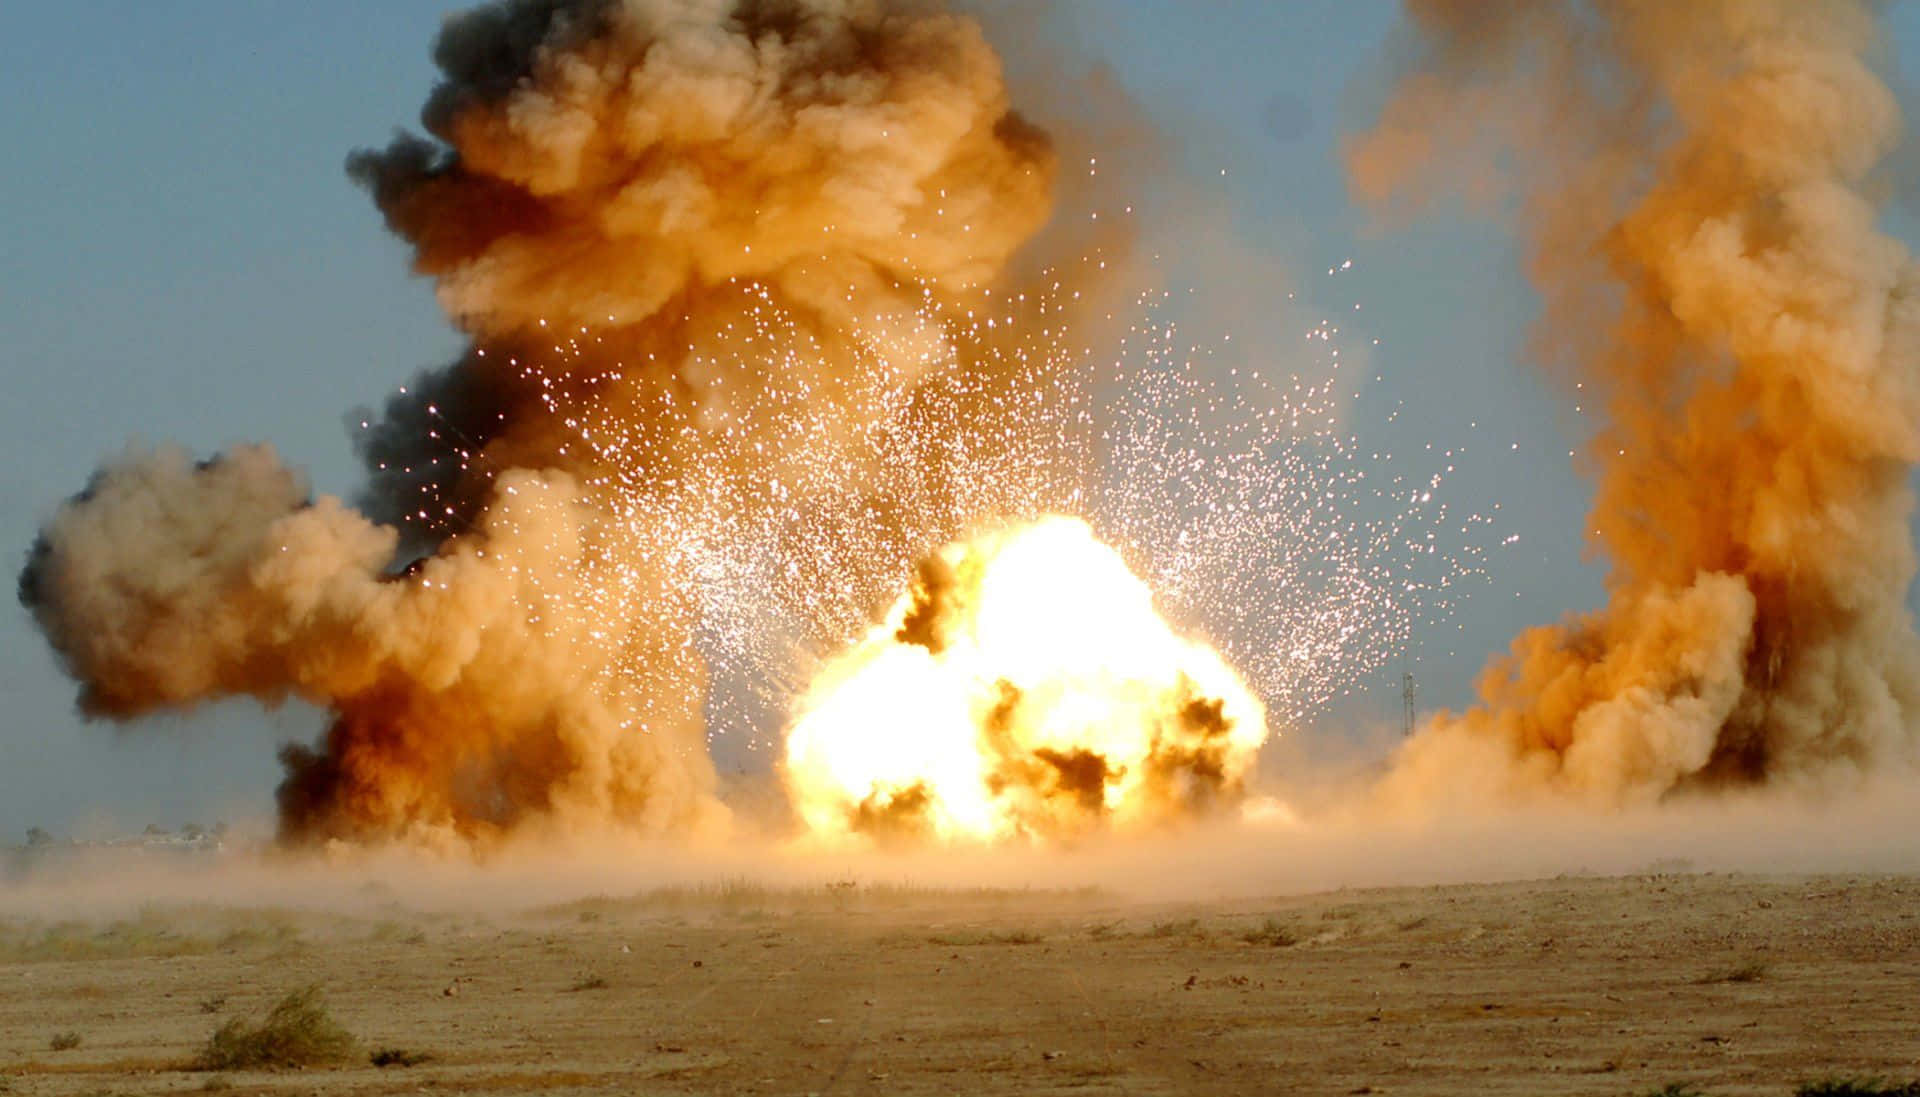 Einegroße Explosion In Der Wüste.